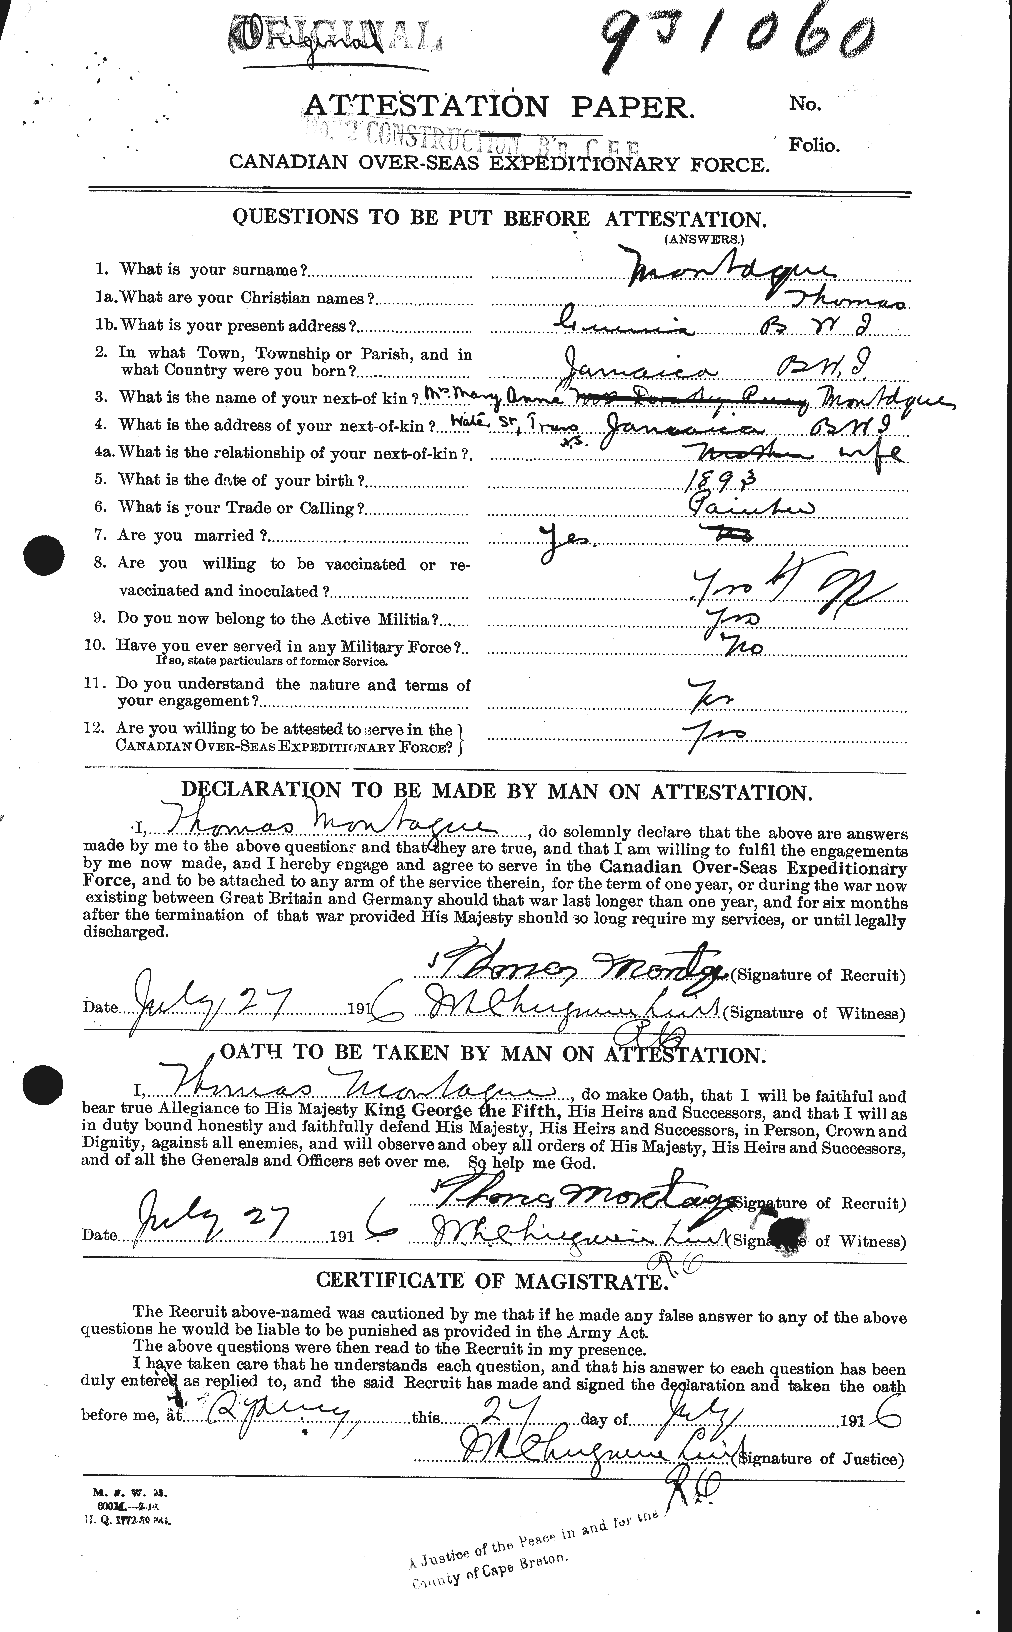 Dossiers du Personnel de la Première Guerre mondiale - CEC 500190a